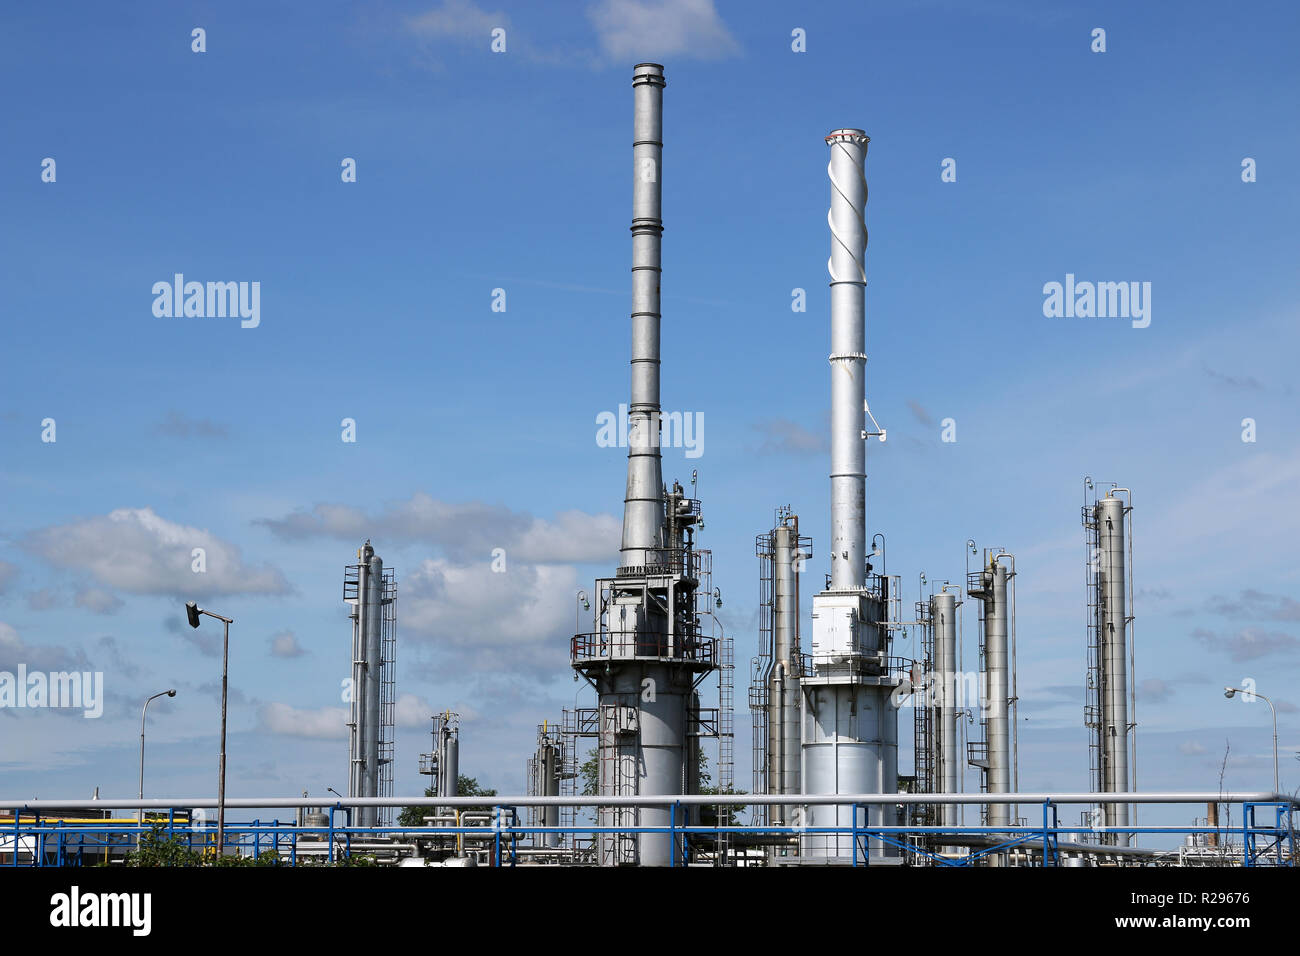 Raffinerie de pétrole usine pétrochimique Industrie formulaire Banque D'Images